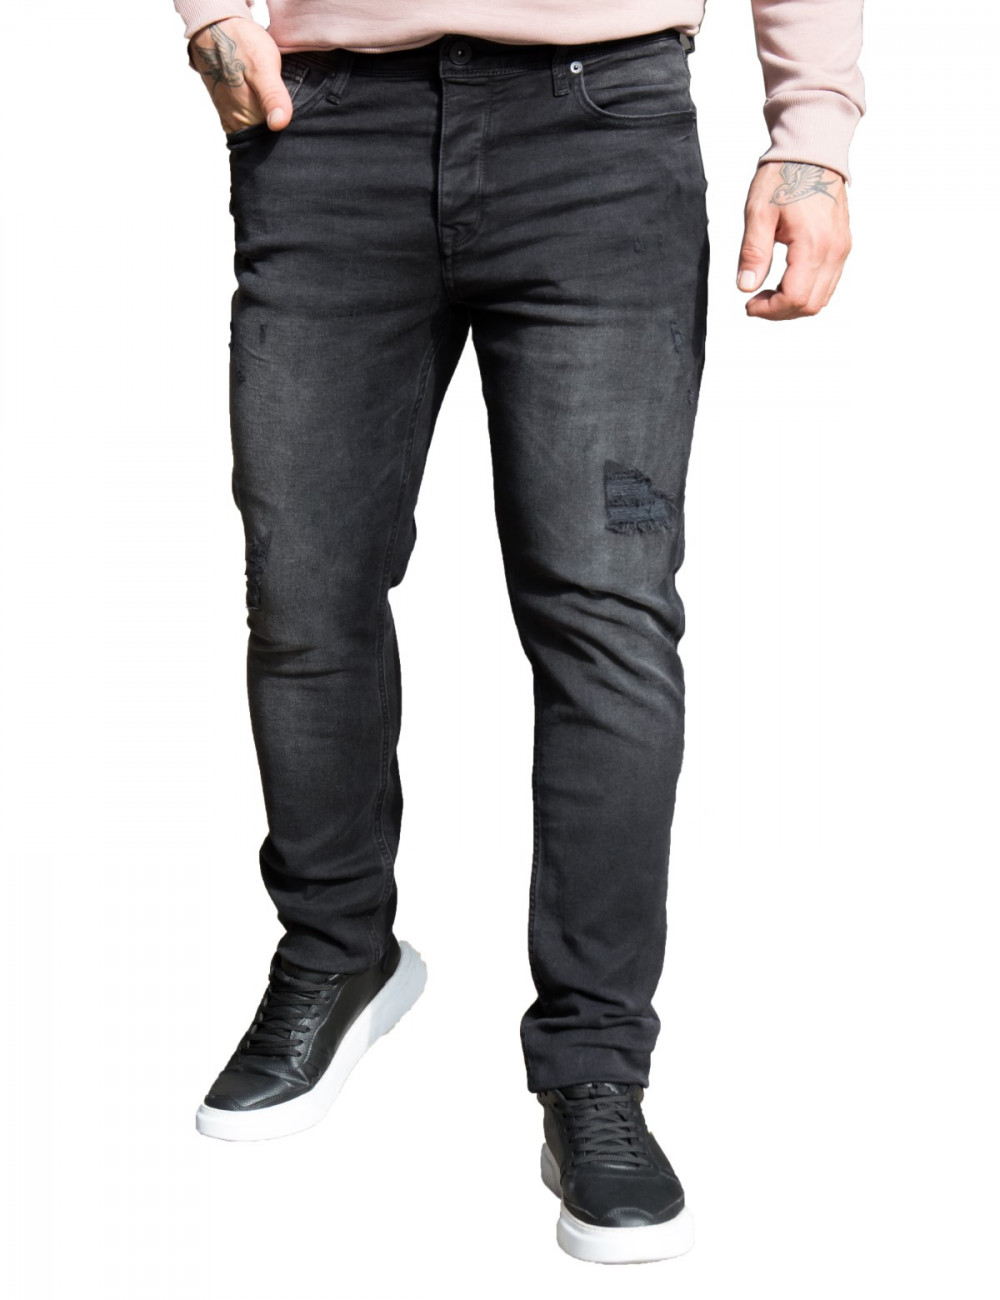 Ανδρικό μαύρο τζιν παντελόνι με σκισίματα GB4784